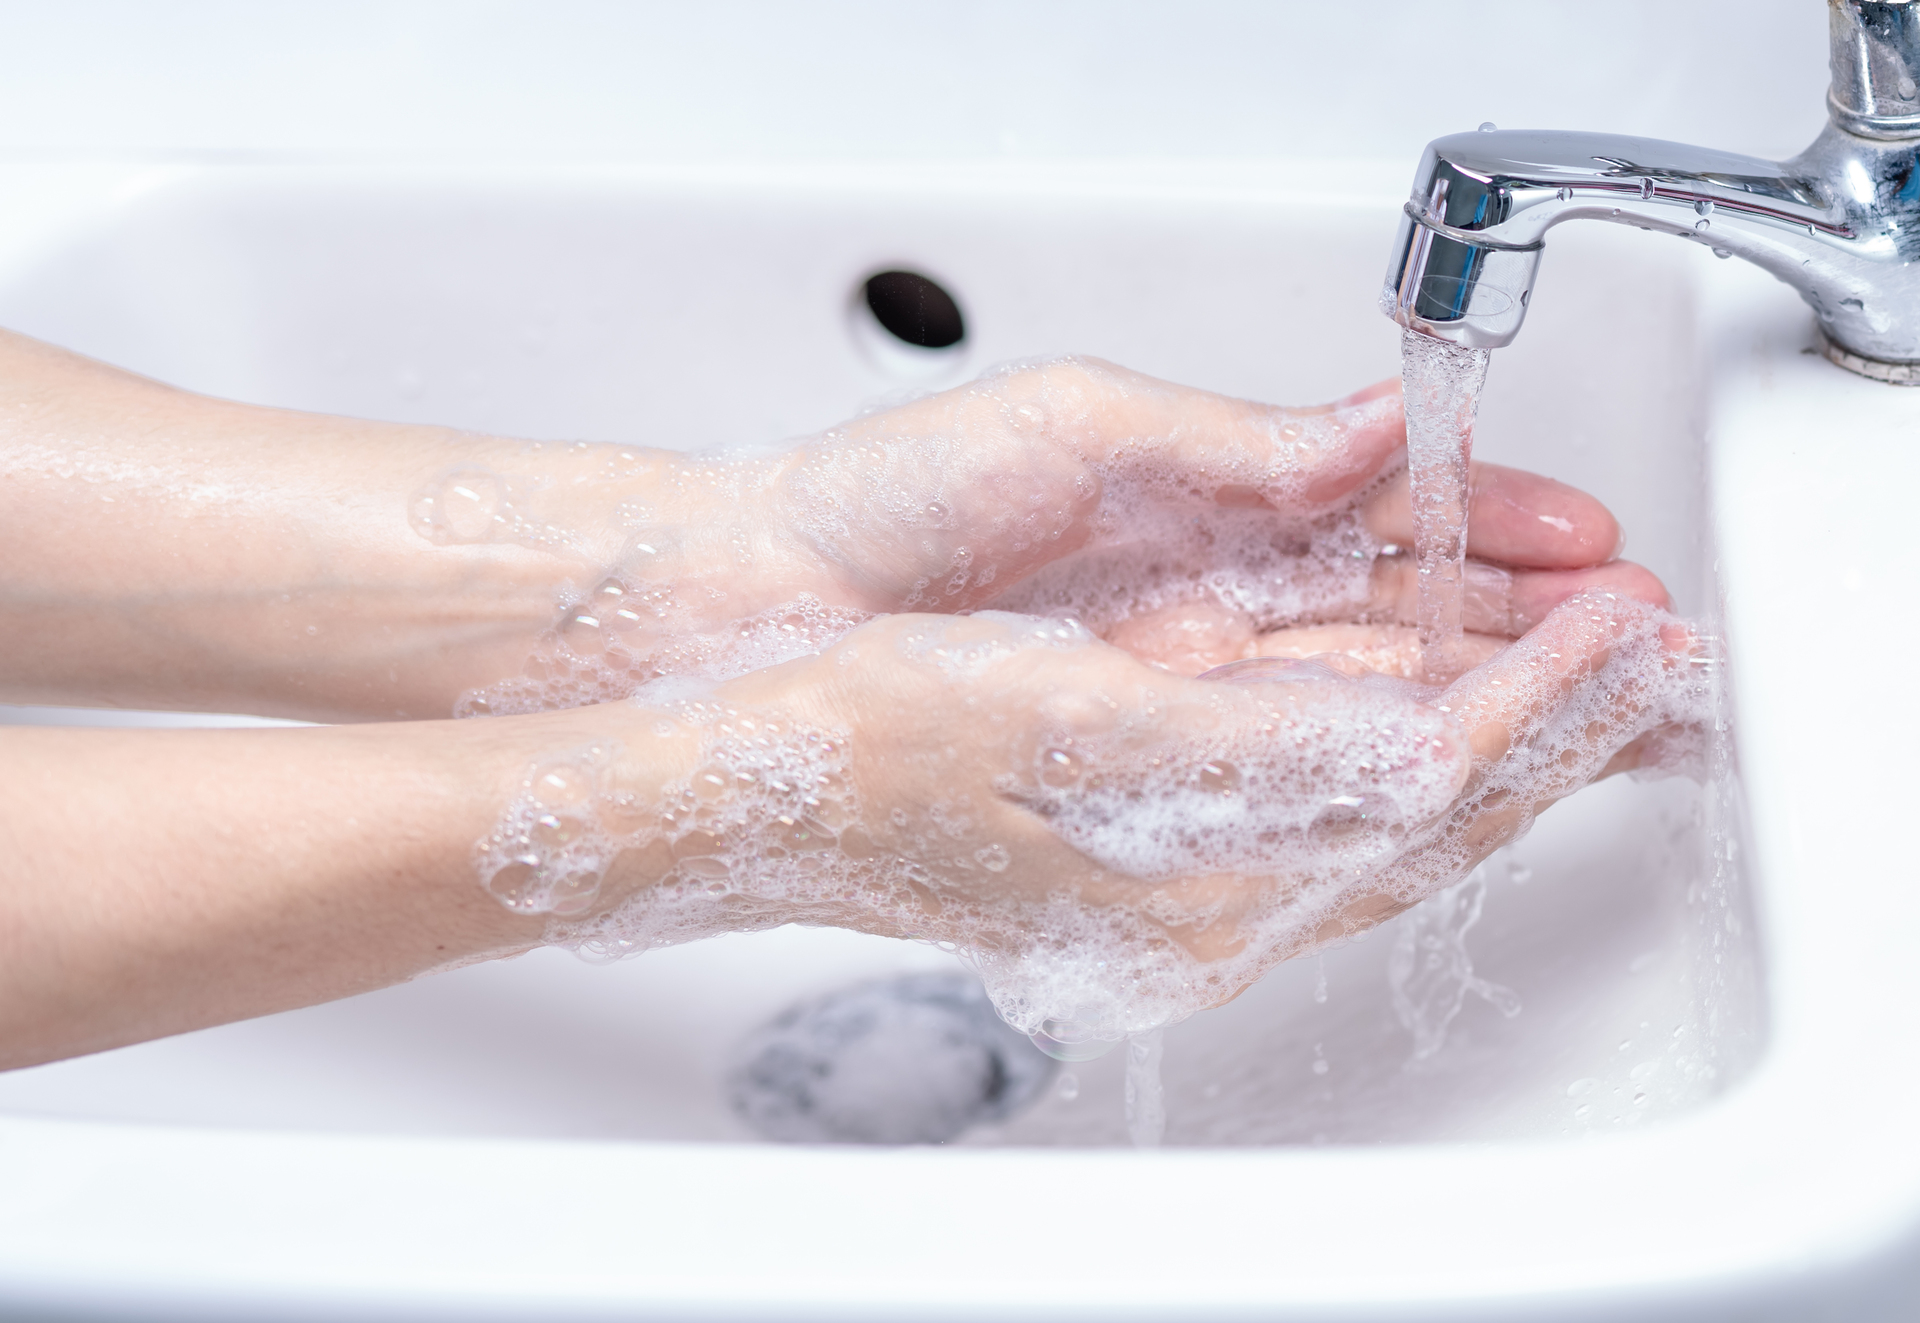 Na tym obrazku widzimy ręce osoby w trakcie mycia w łazience. Jest to ważny krok w zachowaniu higieny osobistej i zapobieganiu rozprzestrzenianiu się zarazków.Osoba trzyma ręce pod strumieniem ciepłej wody. Możemy zauważyć, że używa mydła, które tworzy gęstą pianę. Osoba starannie myje zarówno dłonie, jak i nadgarstki, docierając do wszystkich ich powierzchni